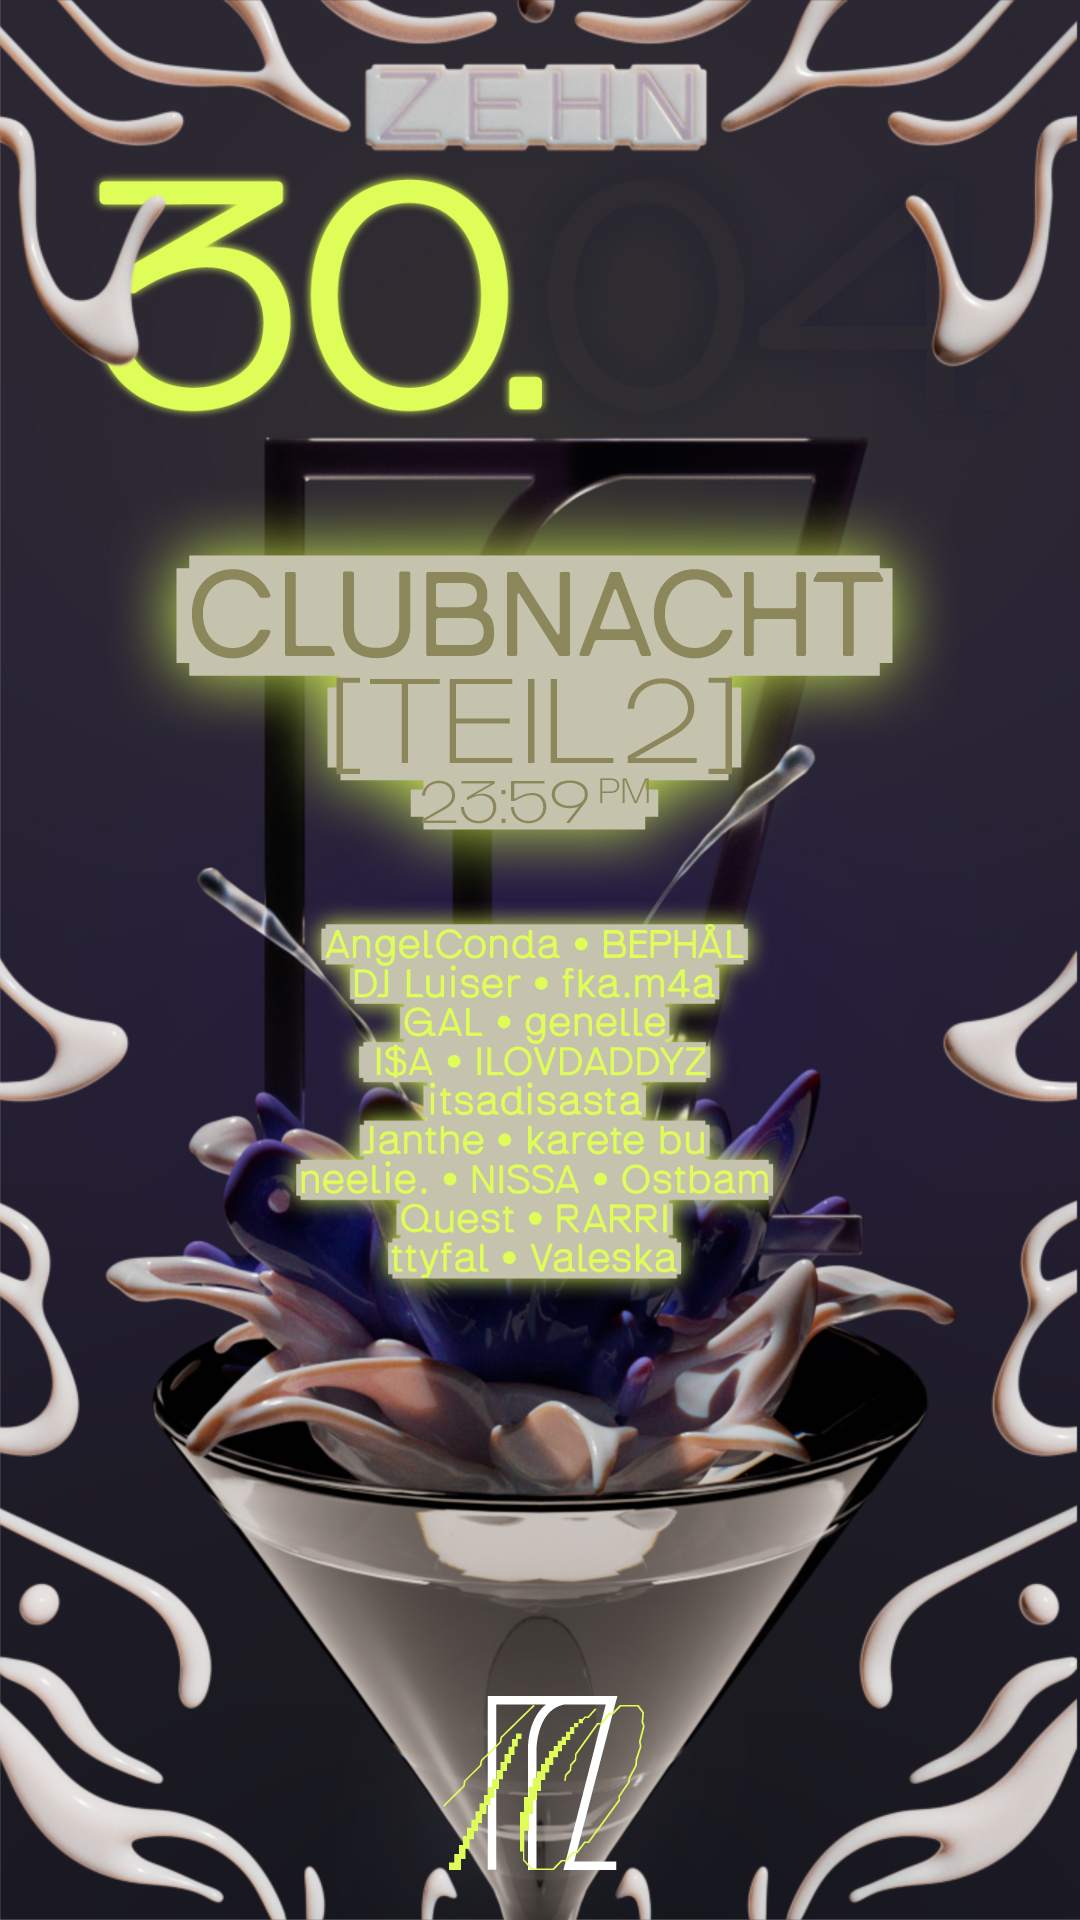 Z E H N // TEIL II // CLUBNACHT - フライヤー表